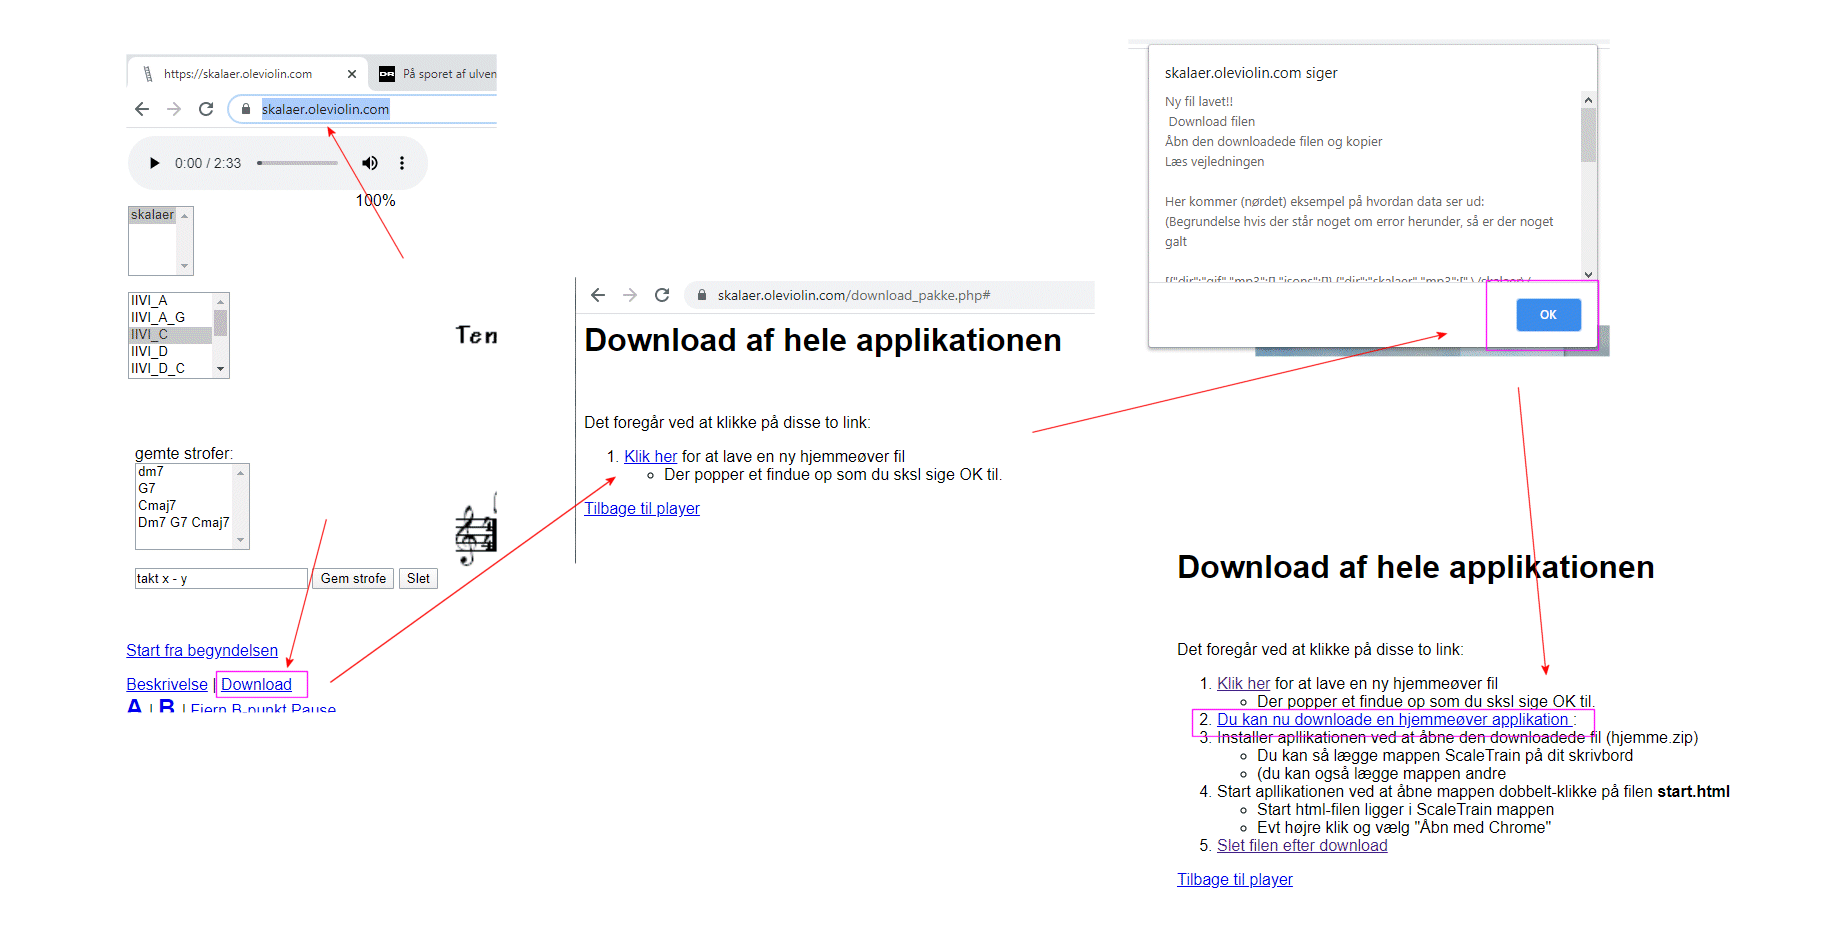 download instruktion